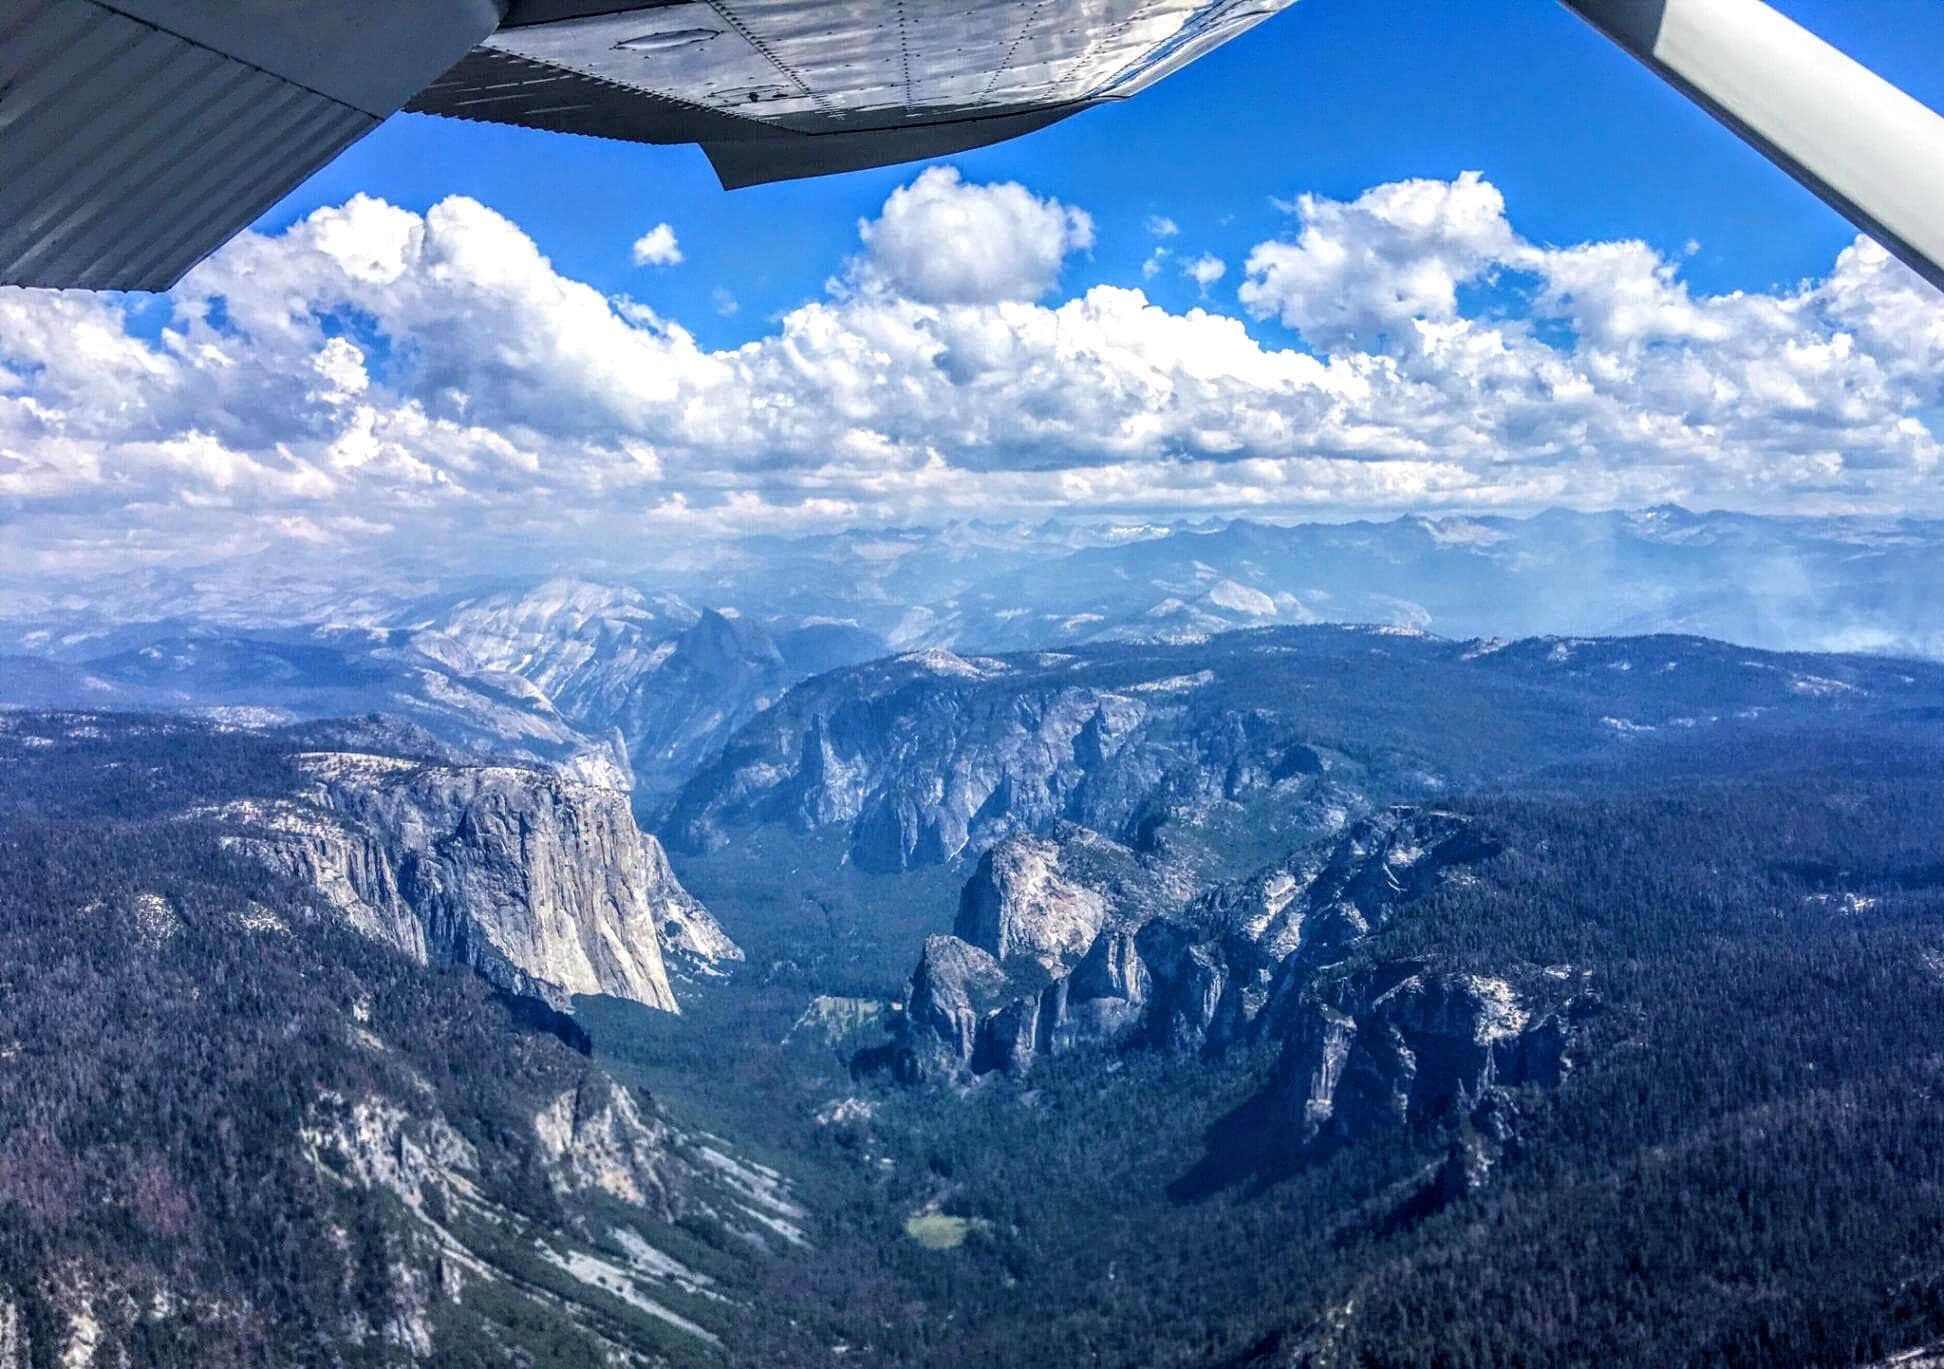 Yosemite, Skydive